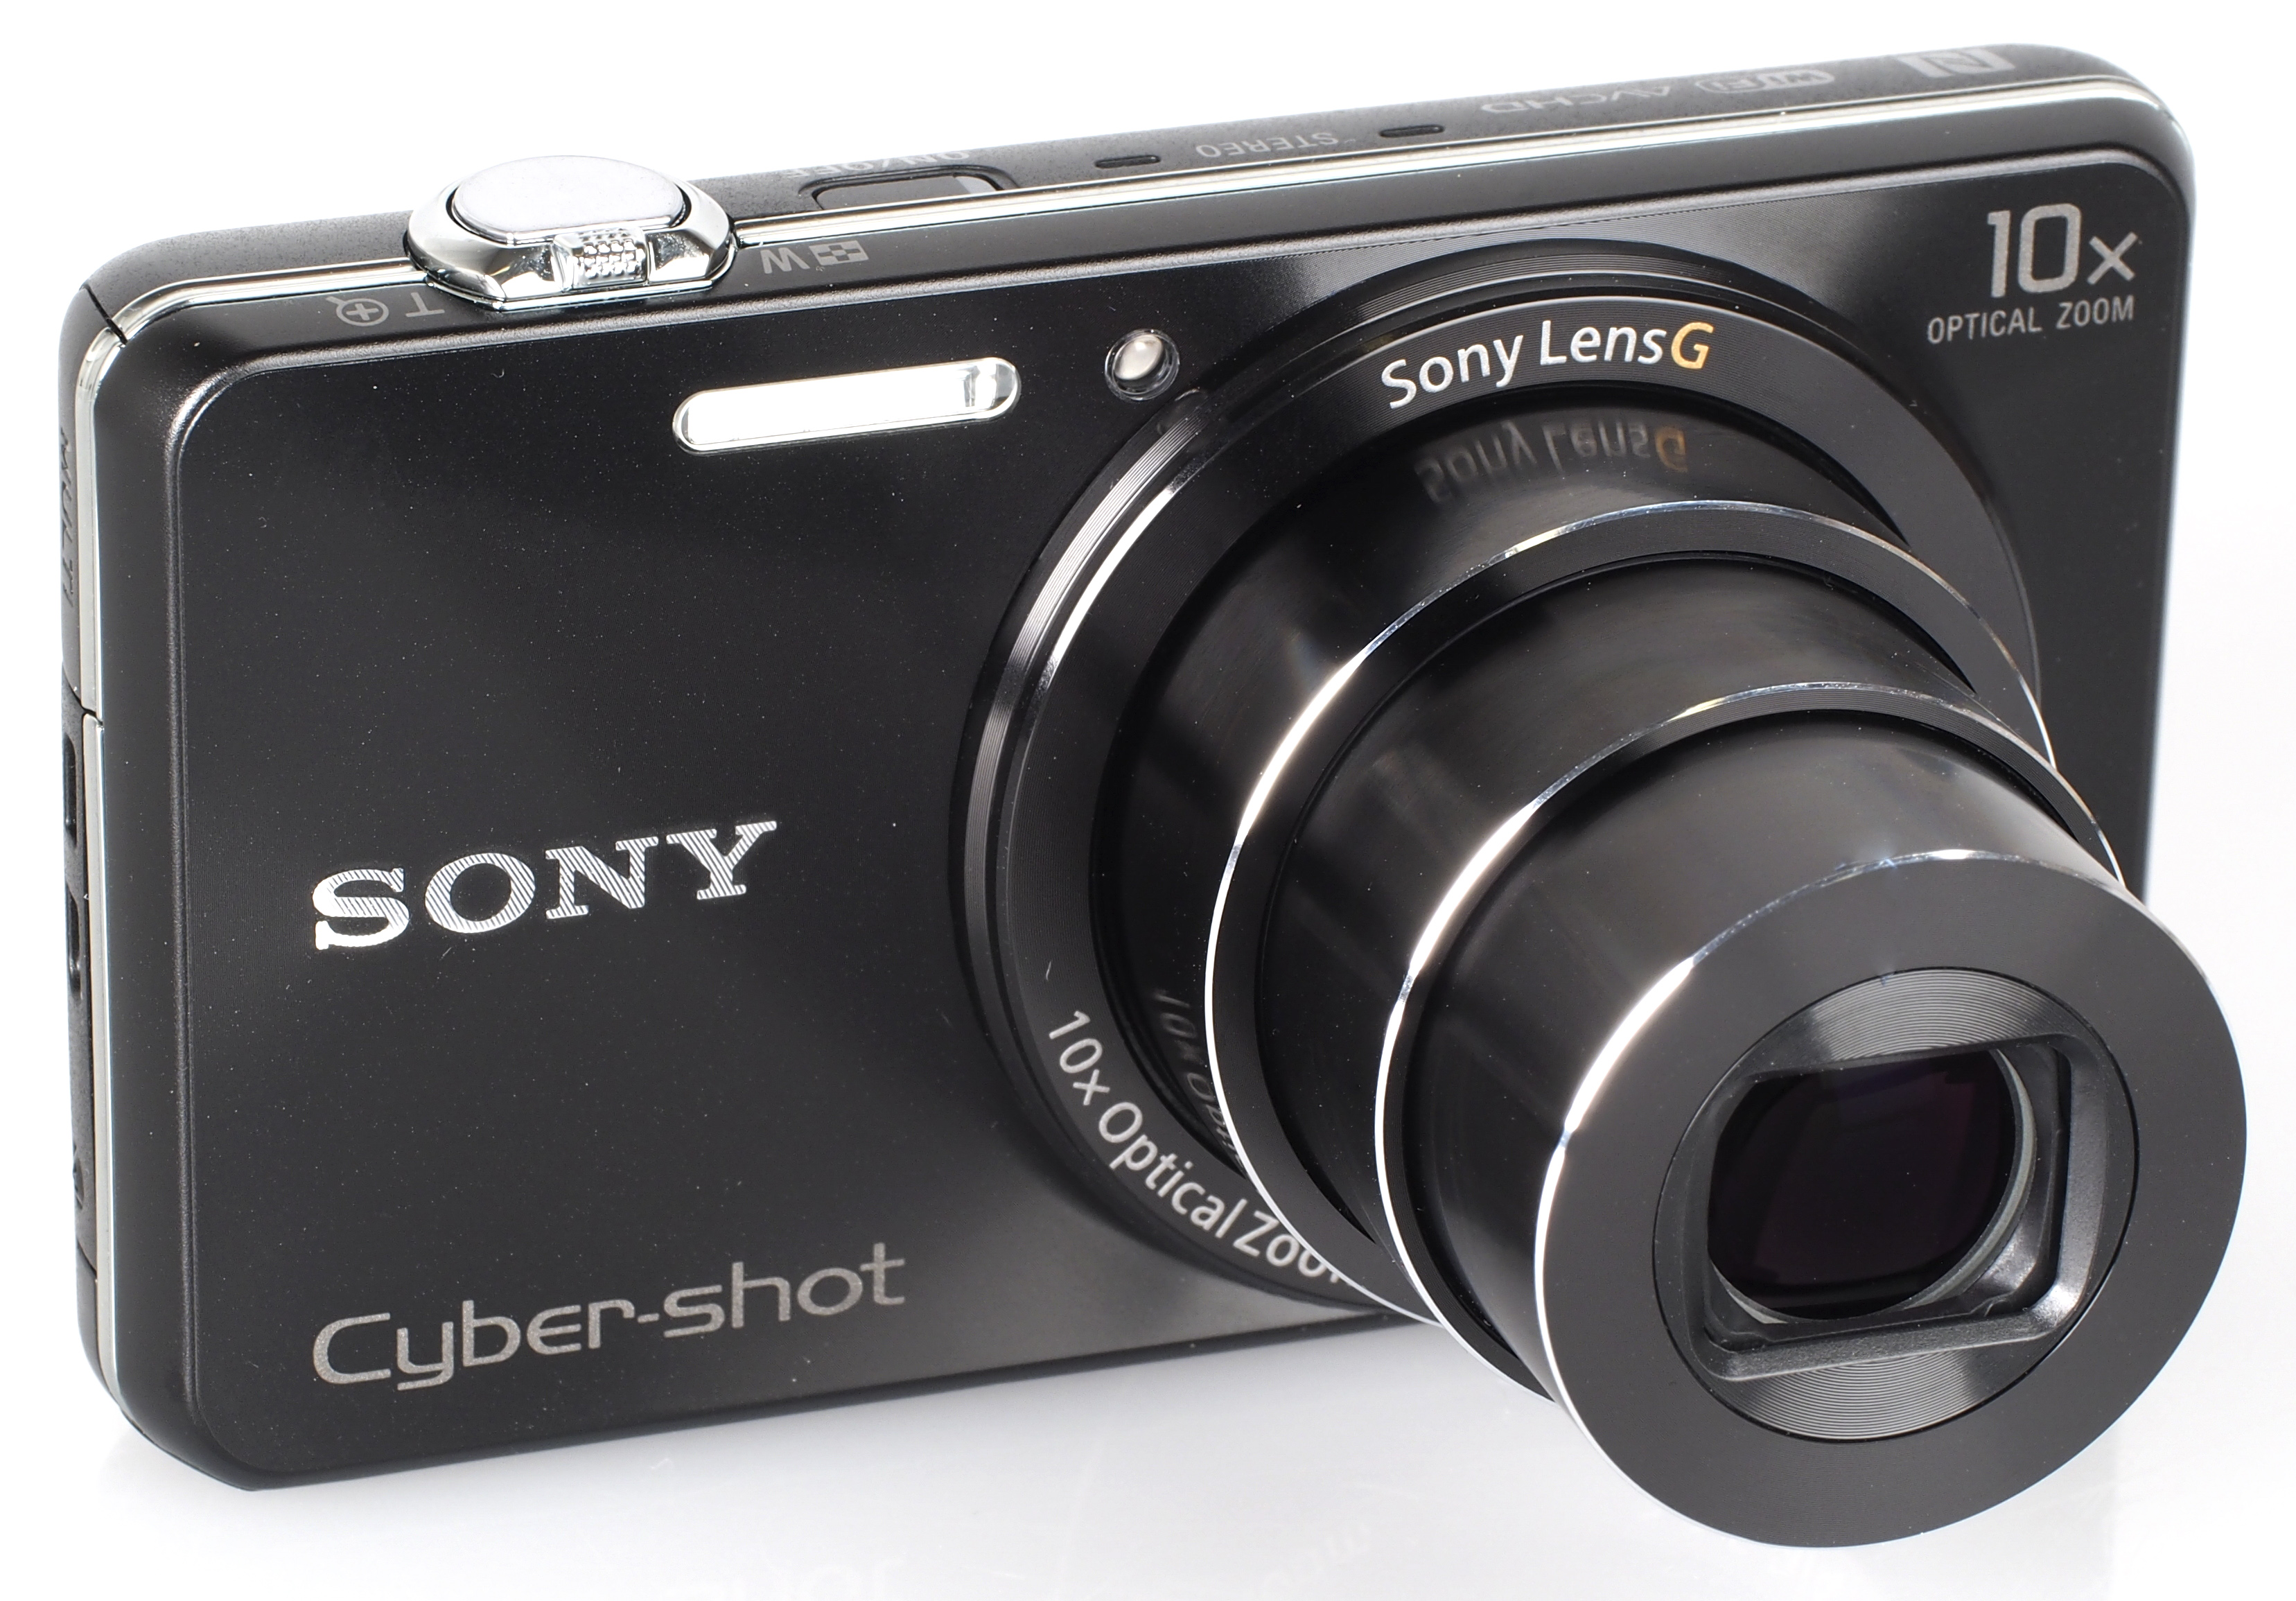 Máy ảnh giá rẻ Sony Dscw x220 có khả năng zoom cao